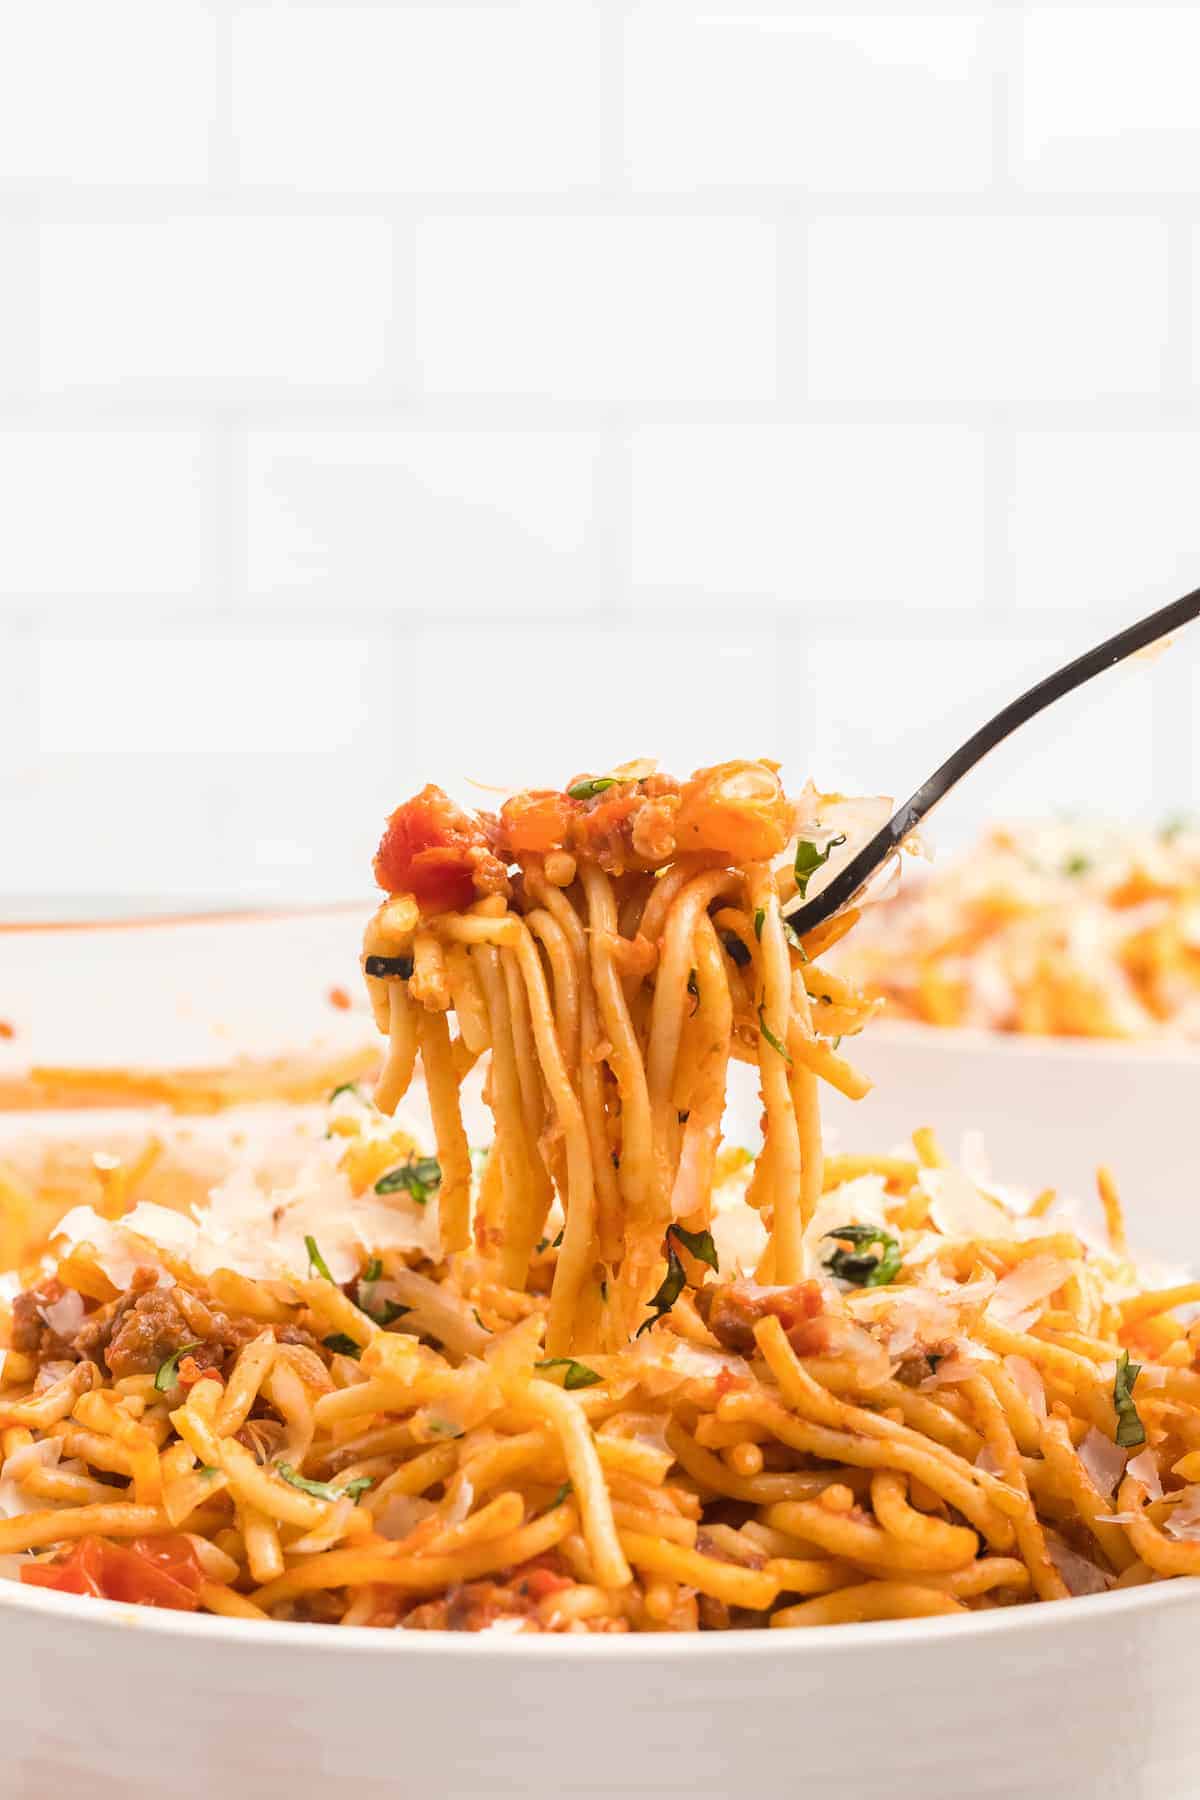 forkful of ninja foodi spaghetti